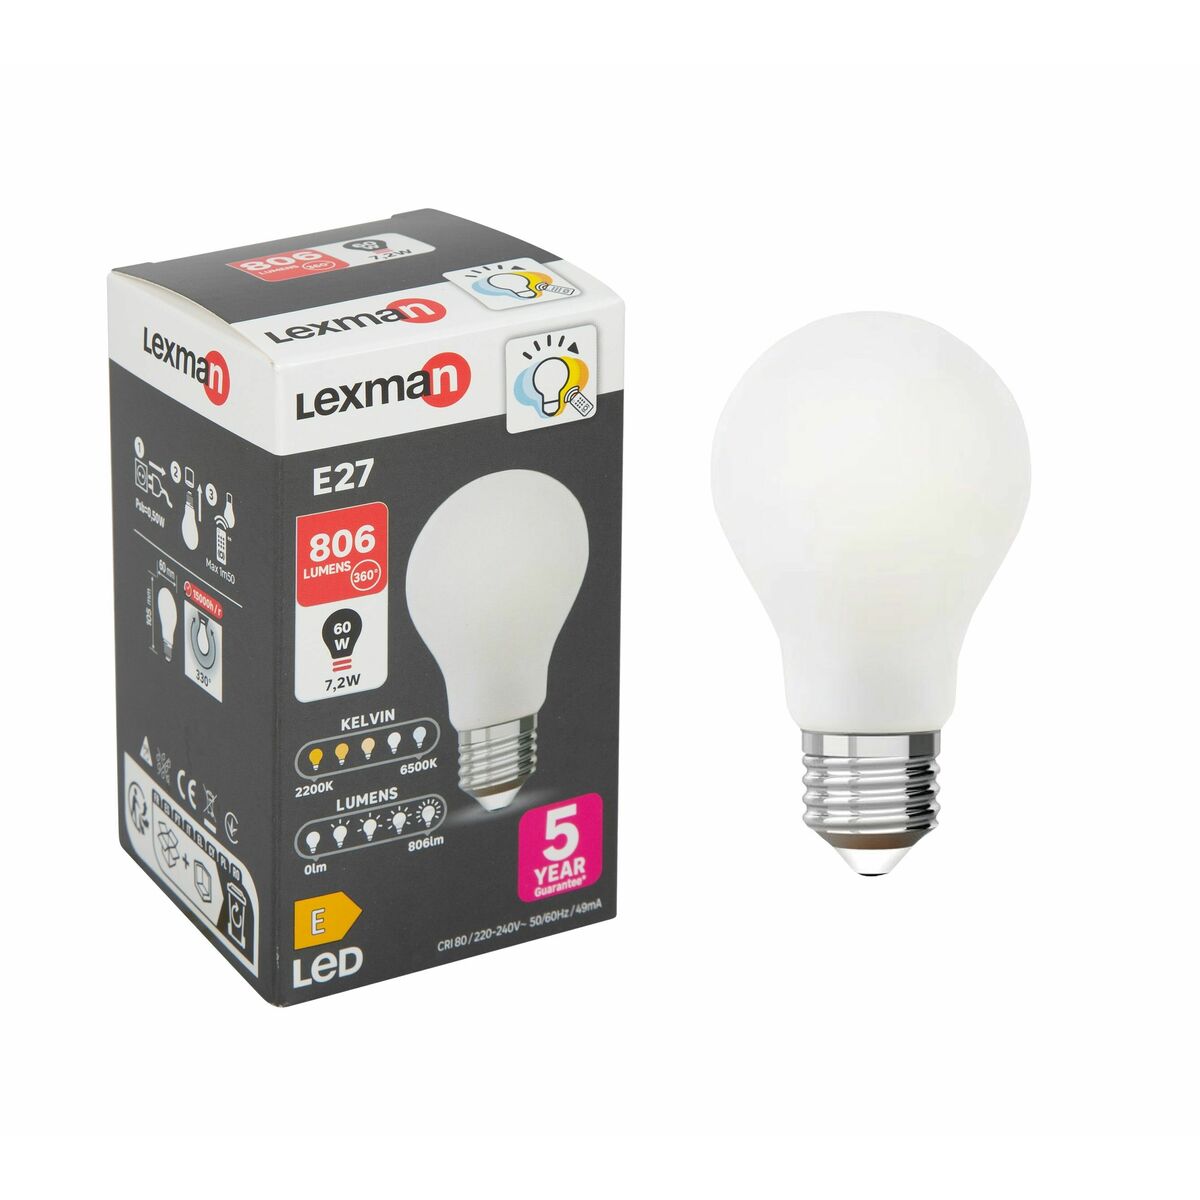 Żarówka LED E27 7,2 W = 60 W 806 lm Lexman